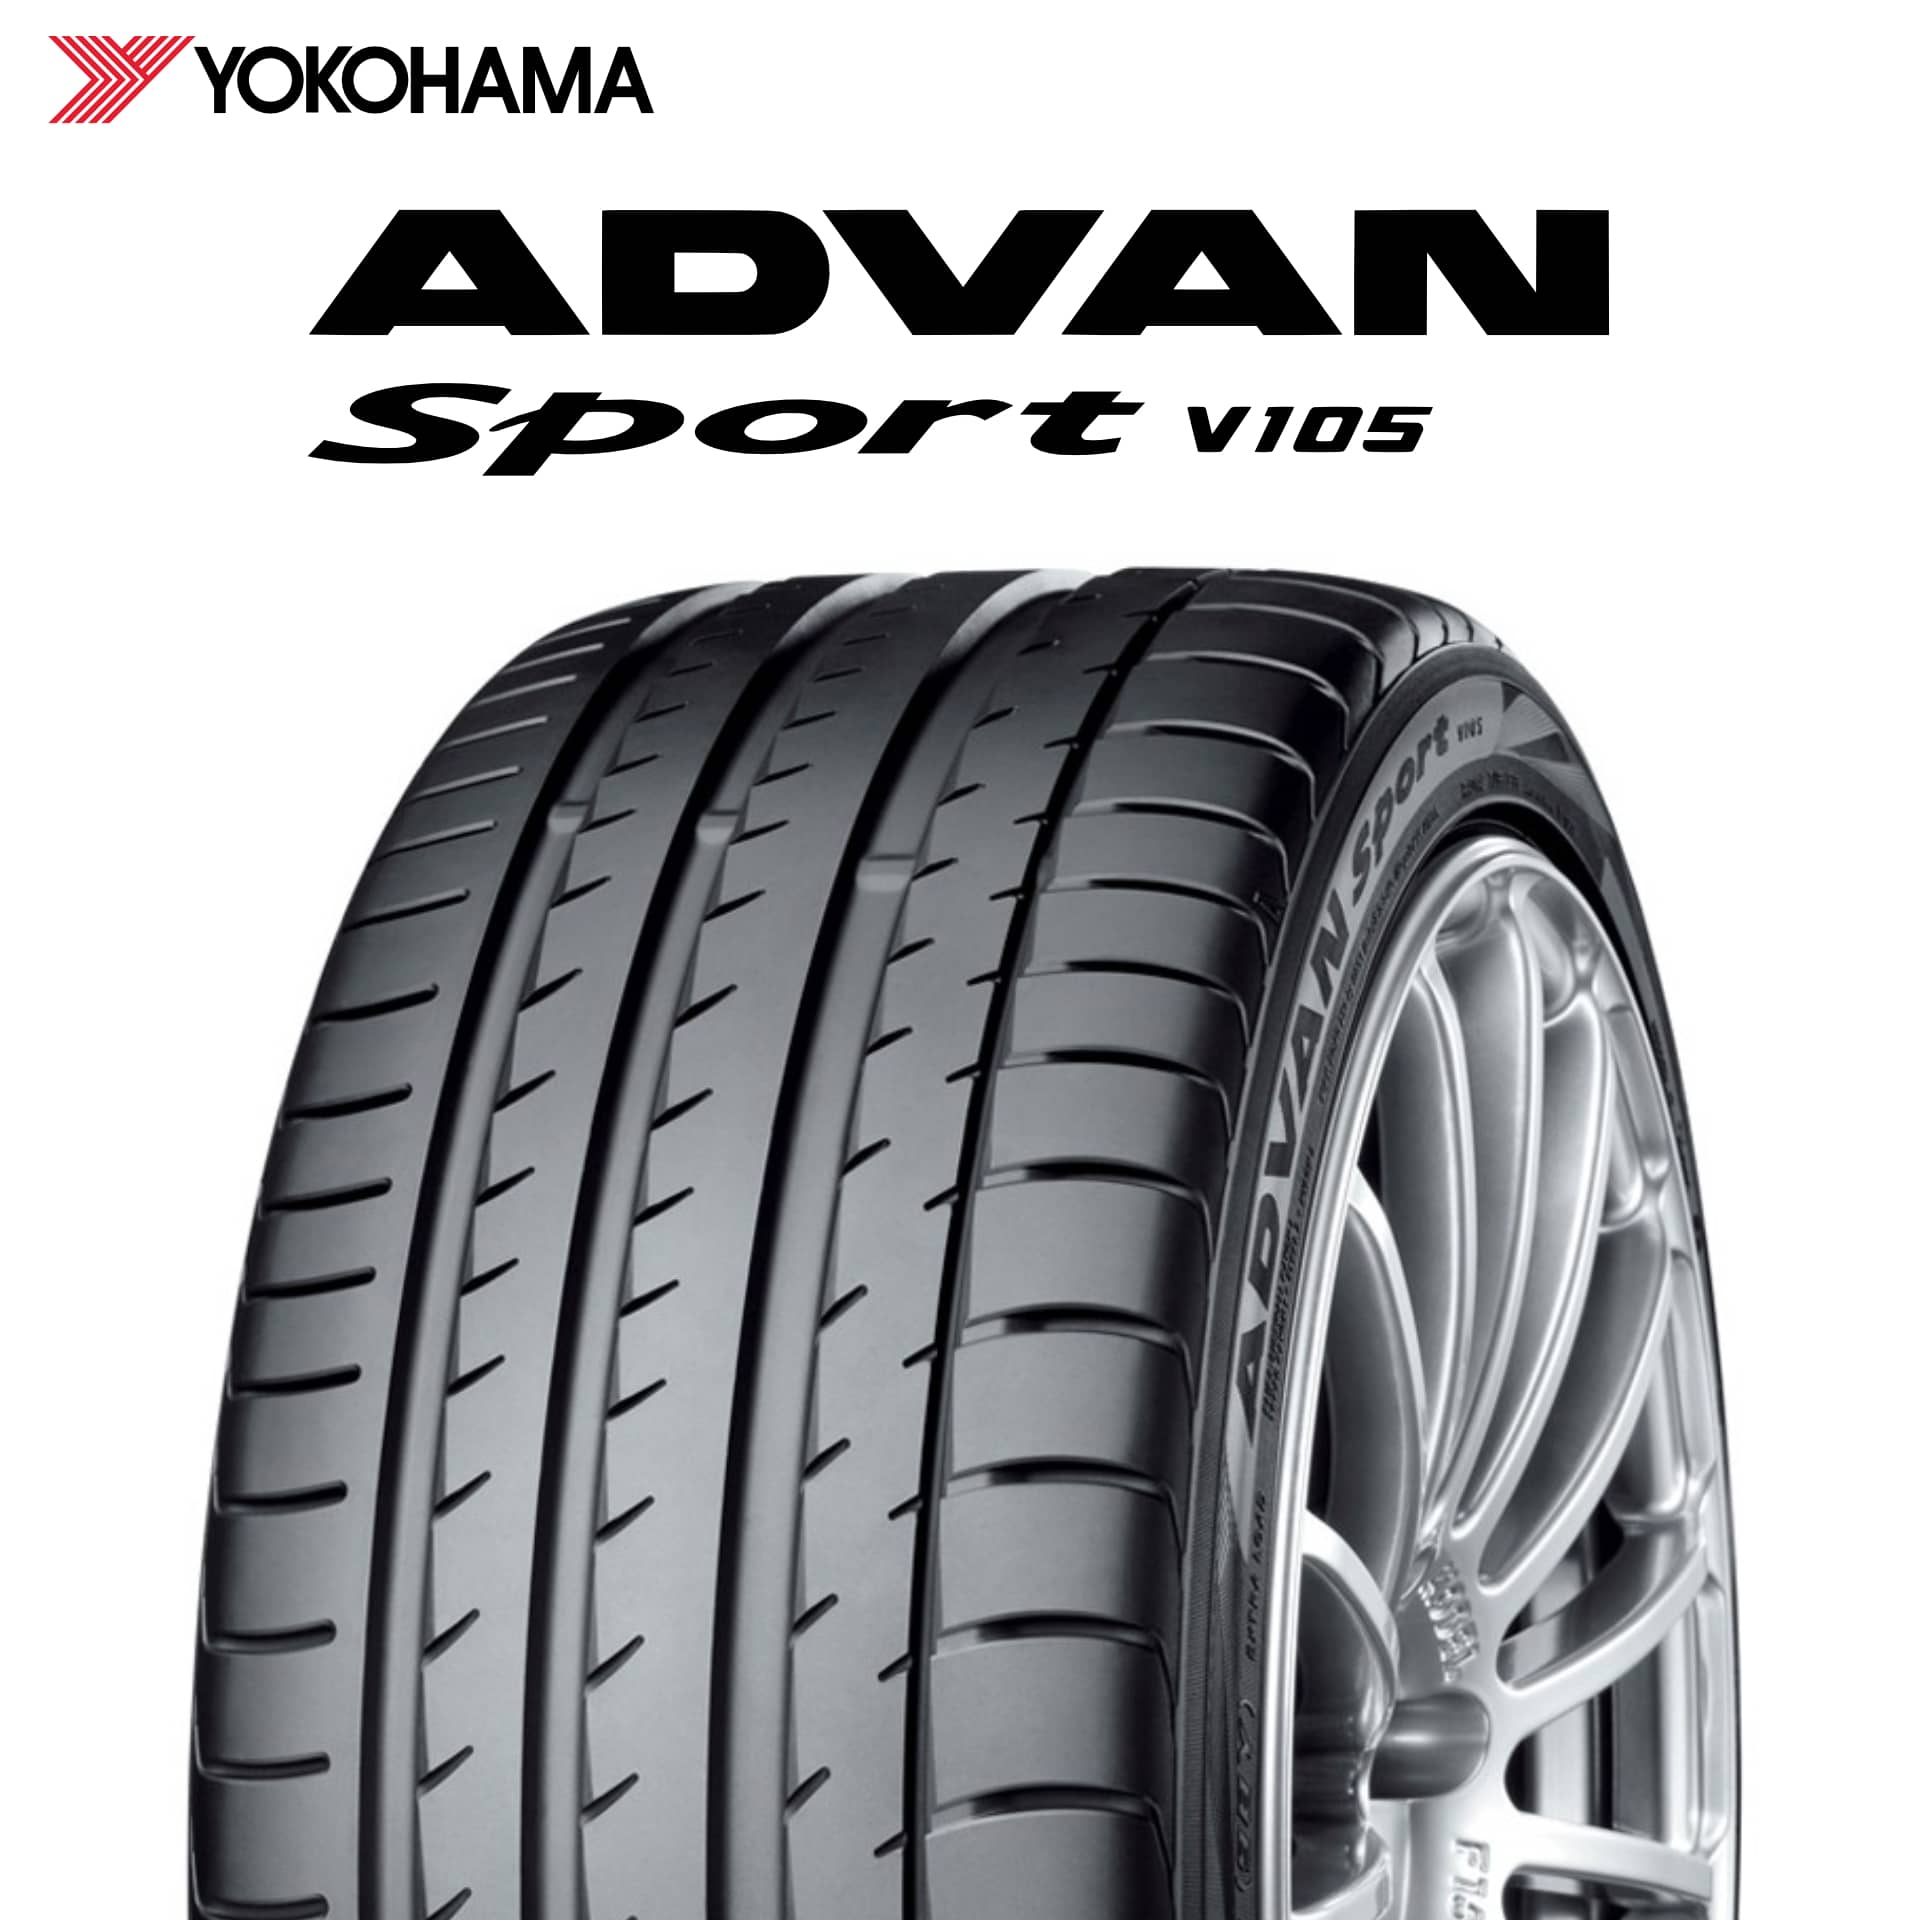 22年製 日本製 245/40R19 (98Y) XL MO ヨコハマタイヤ ADVAN Sport V105 (アドバン スポーツV105) メルセデスベンツ承認タイヤ 19インチ 新品